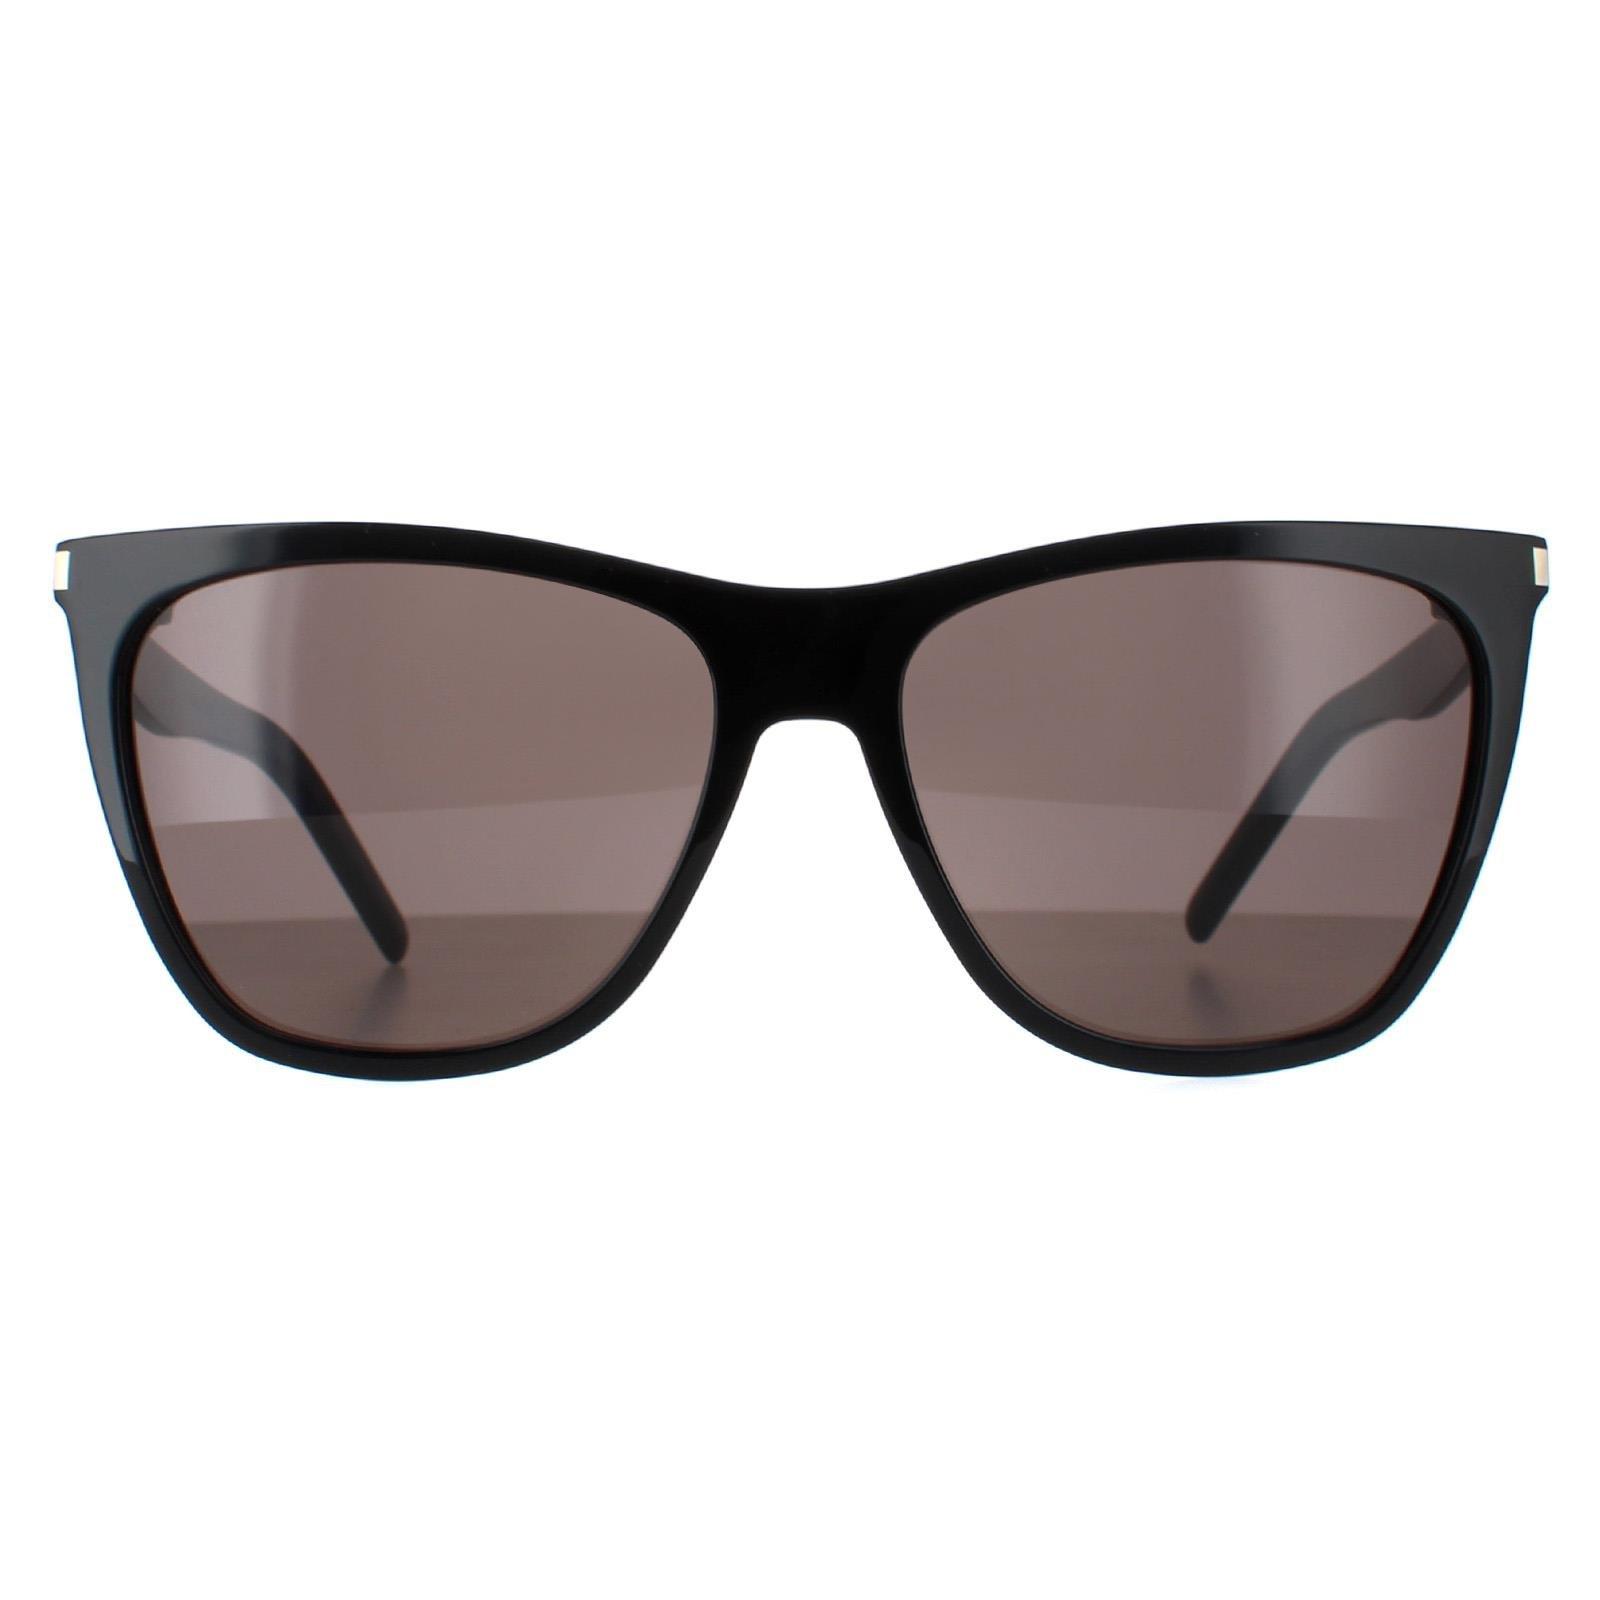 солнцезащитные очки flatlist bricktop цвет solid black Квадратный блестящий черный однотонный серый SL 526 Saint Laurent, черный